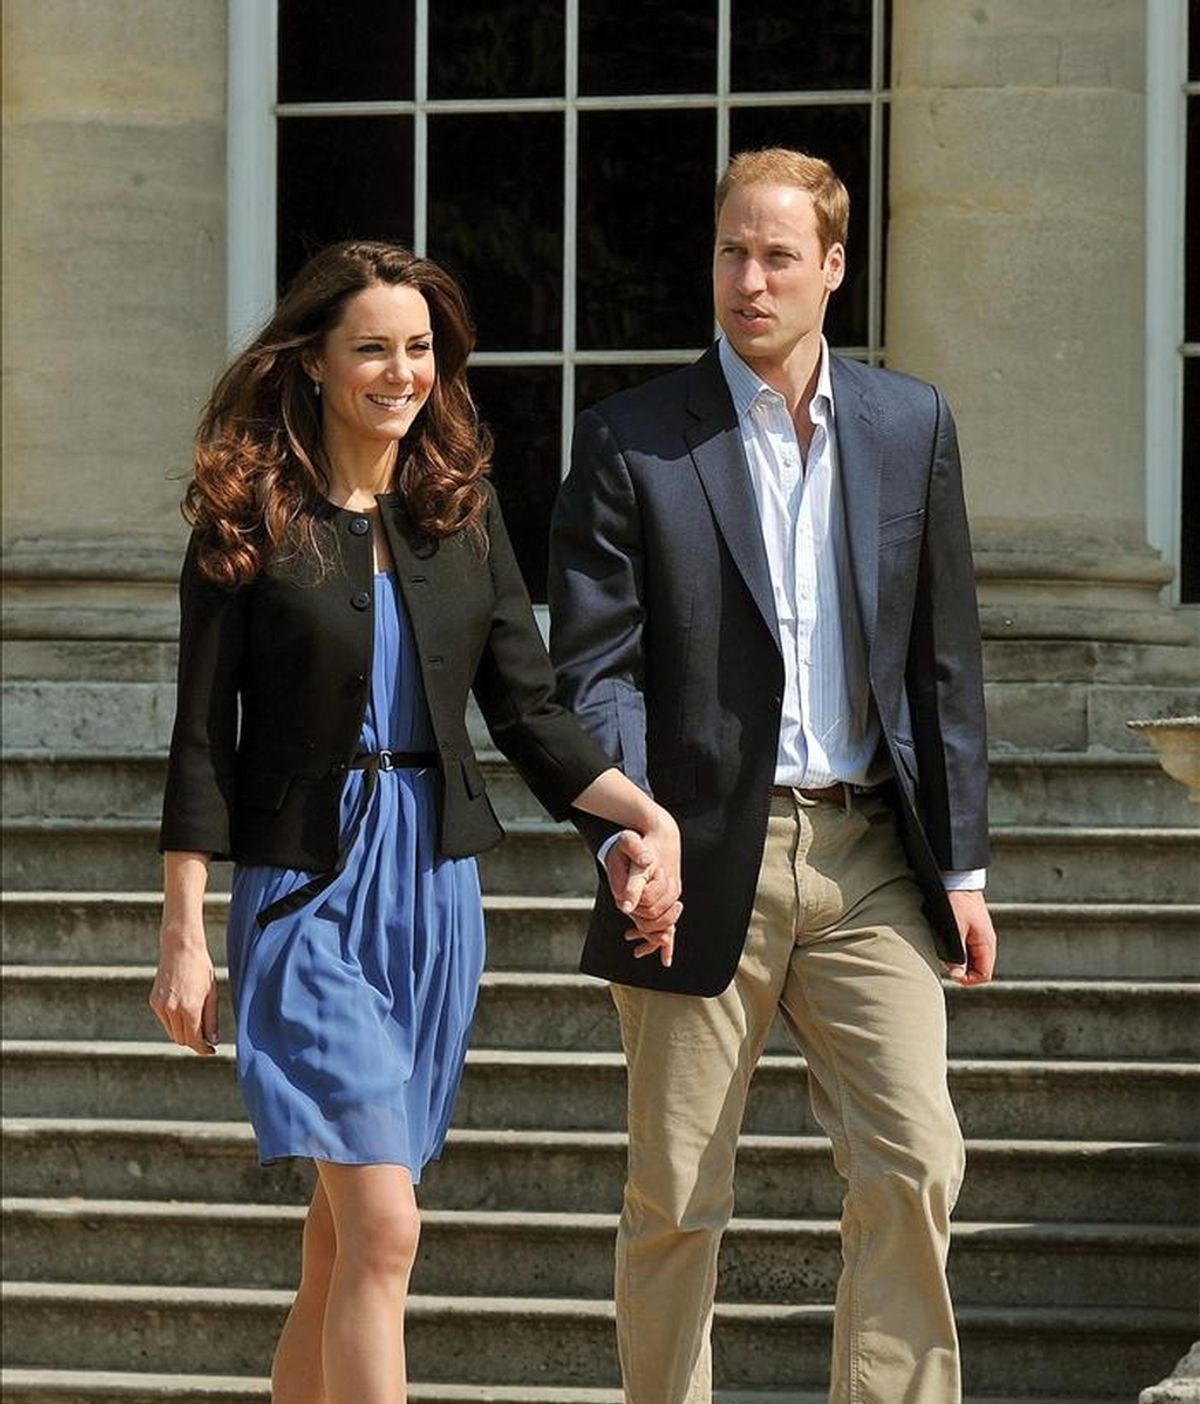 El príncipe Guillermo y Catalina, los nuevos duques de Cambridge, caminan agarrados de la mano el recinto del palacio de Buckingham, en Londres (Reino Unido). EFE